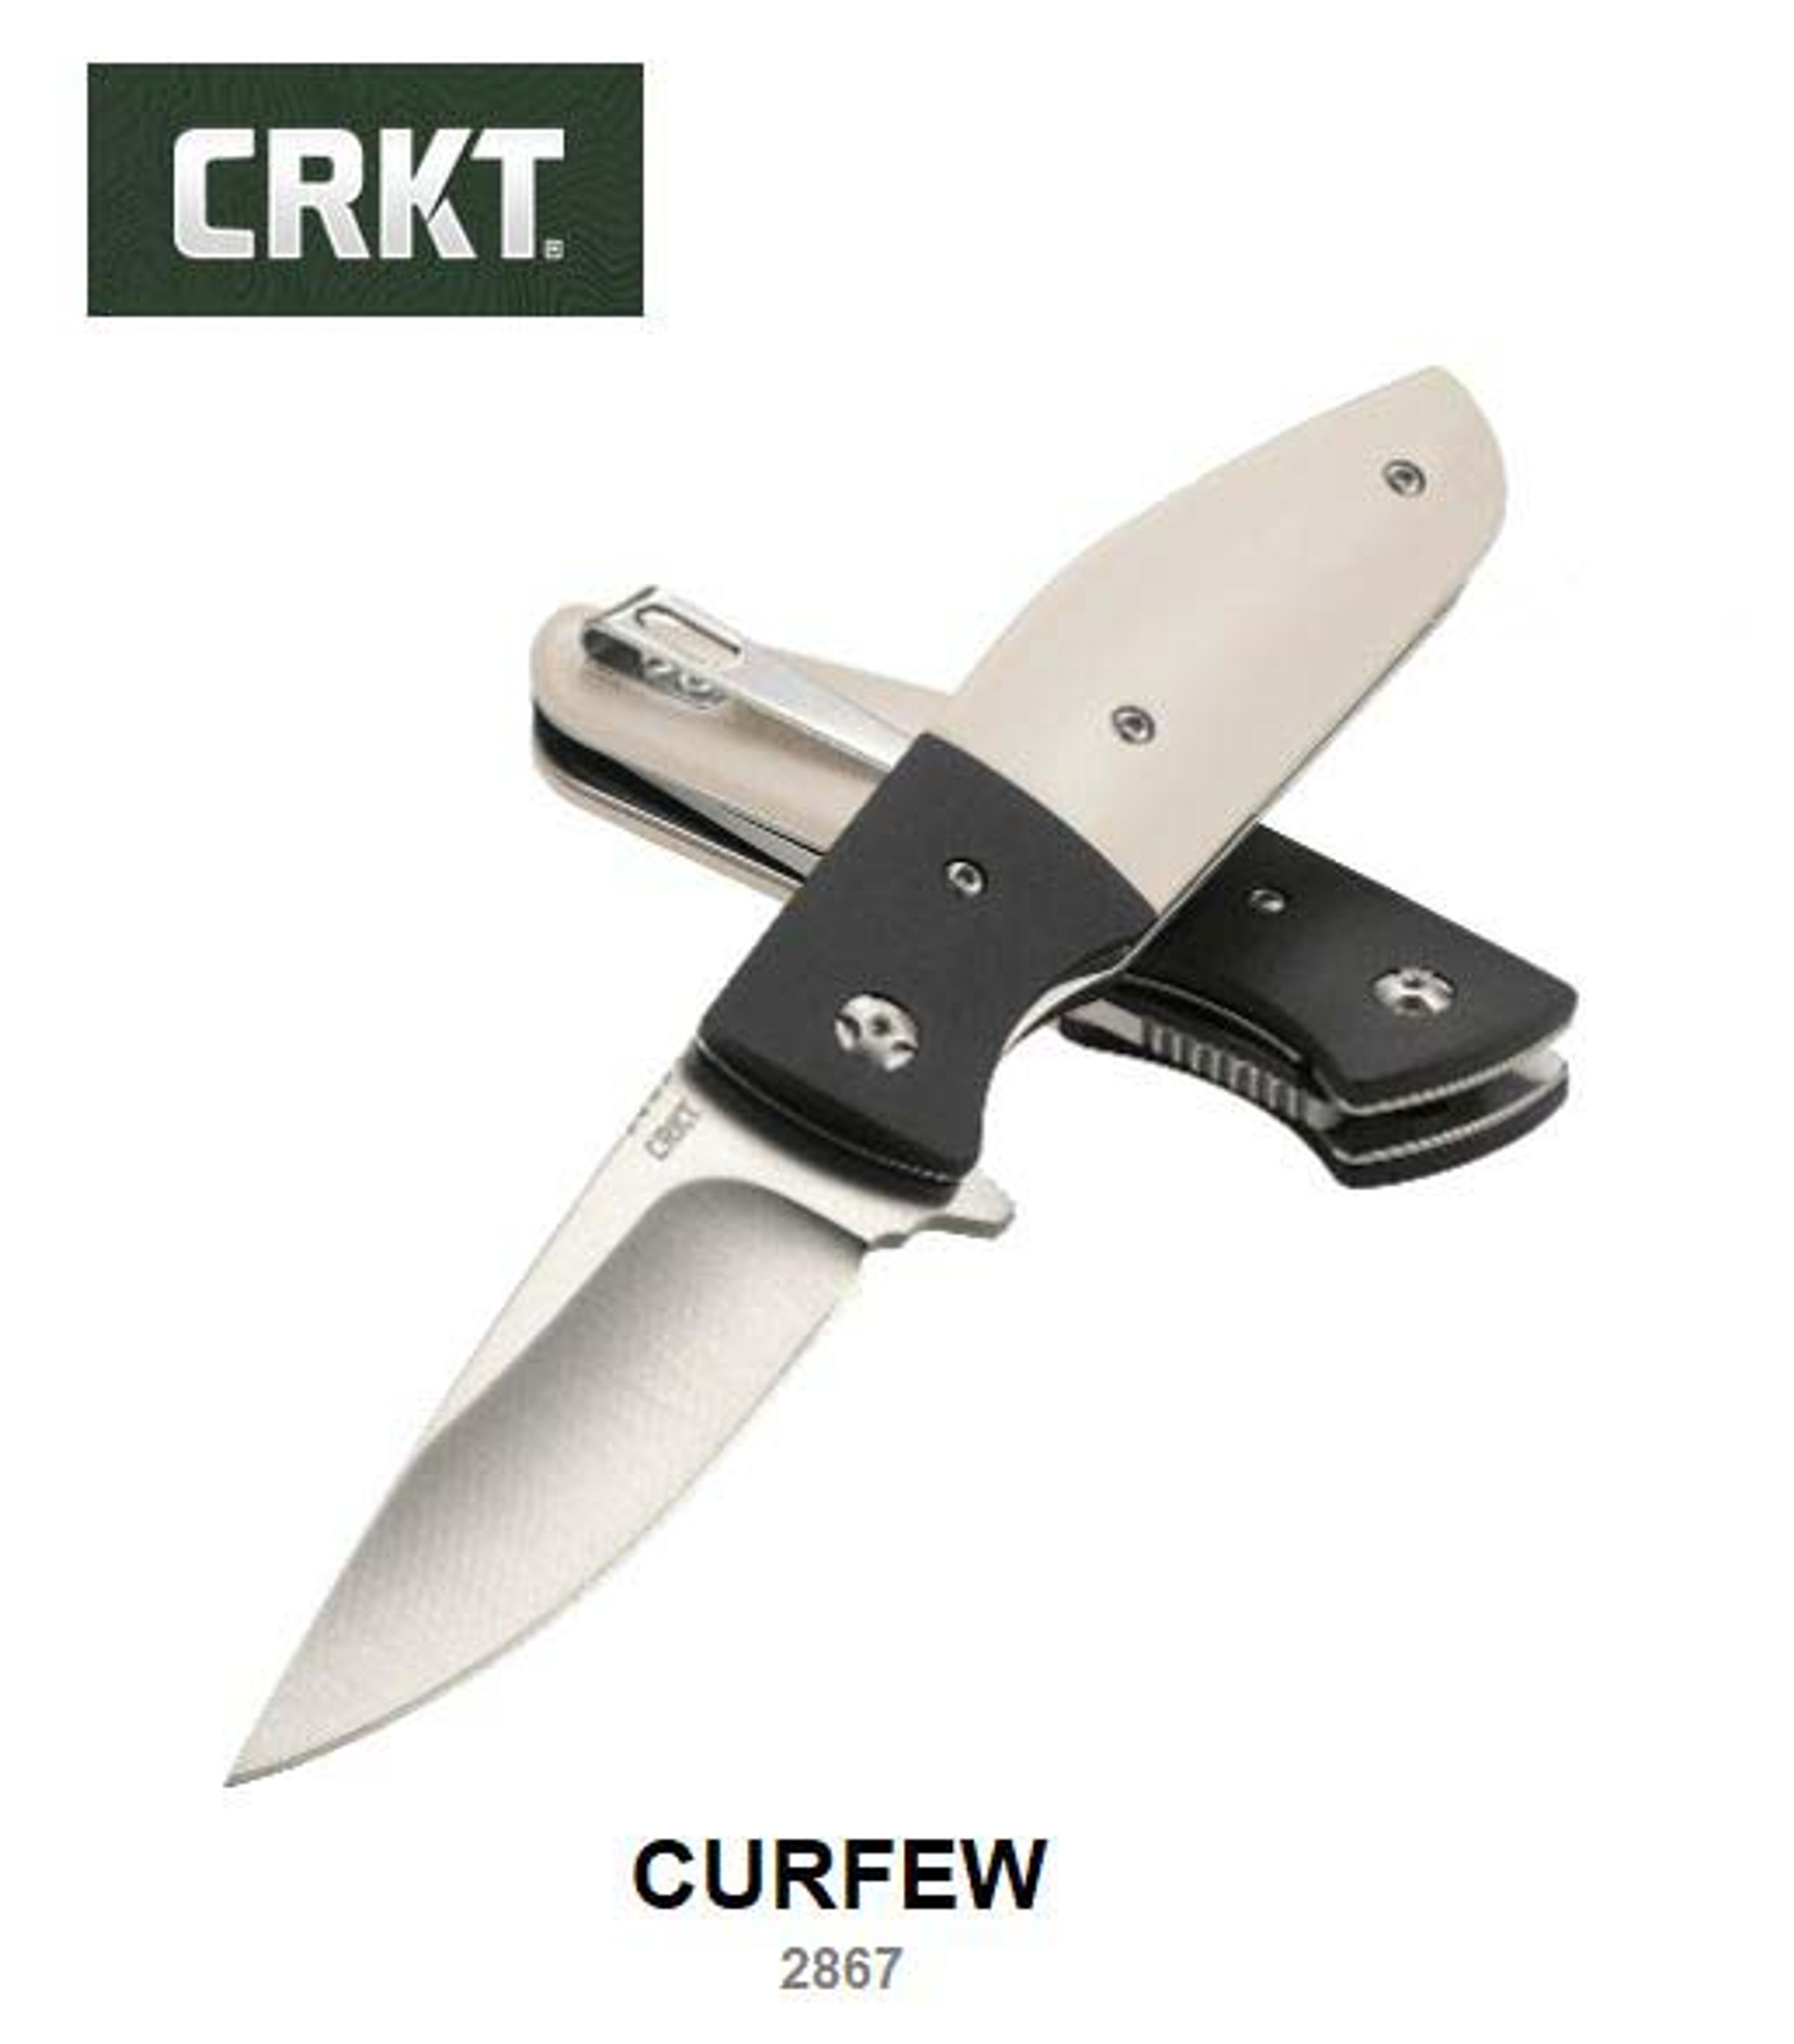 CRKT Curfew Flipper Folding Knife, Assisted Opening, White Fiber/Aluminum, CRKT2867